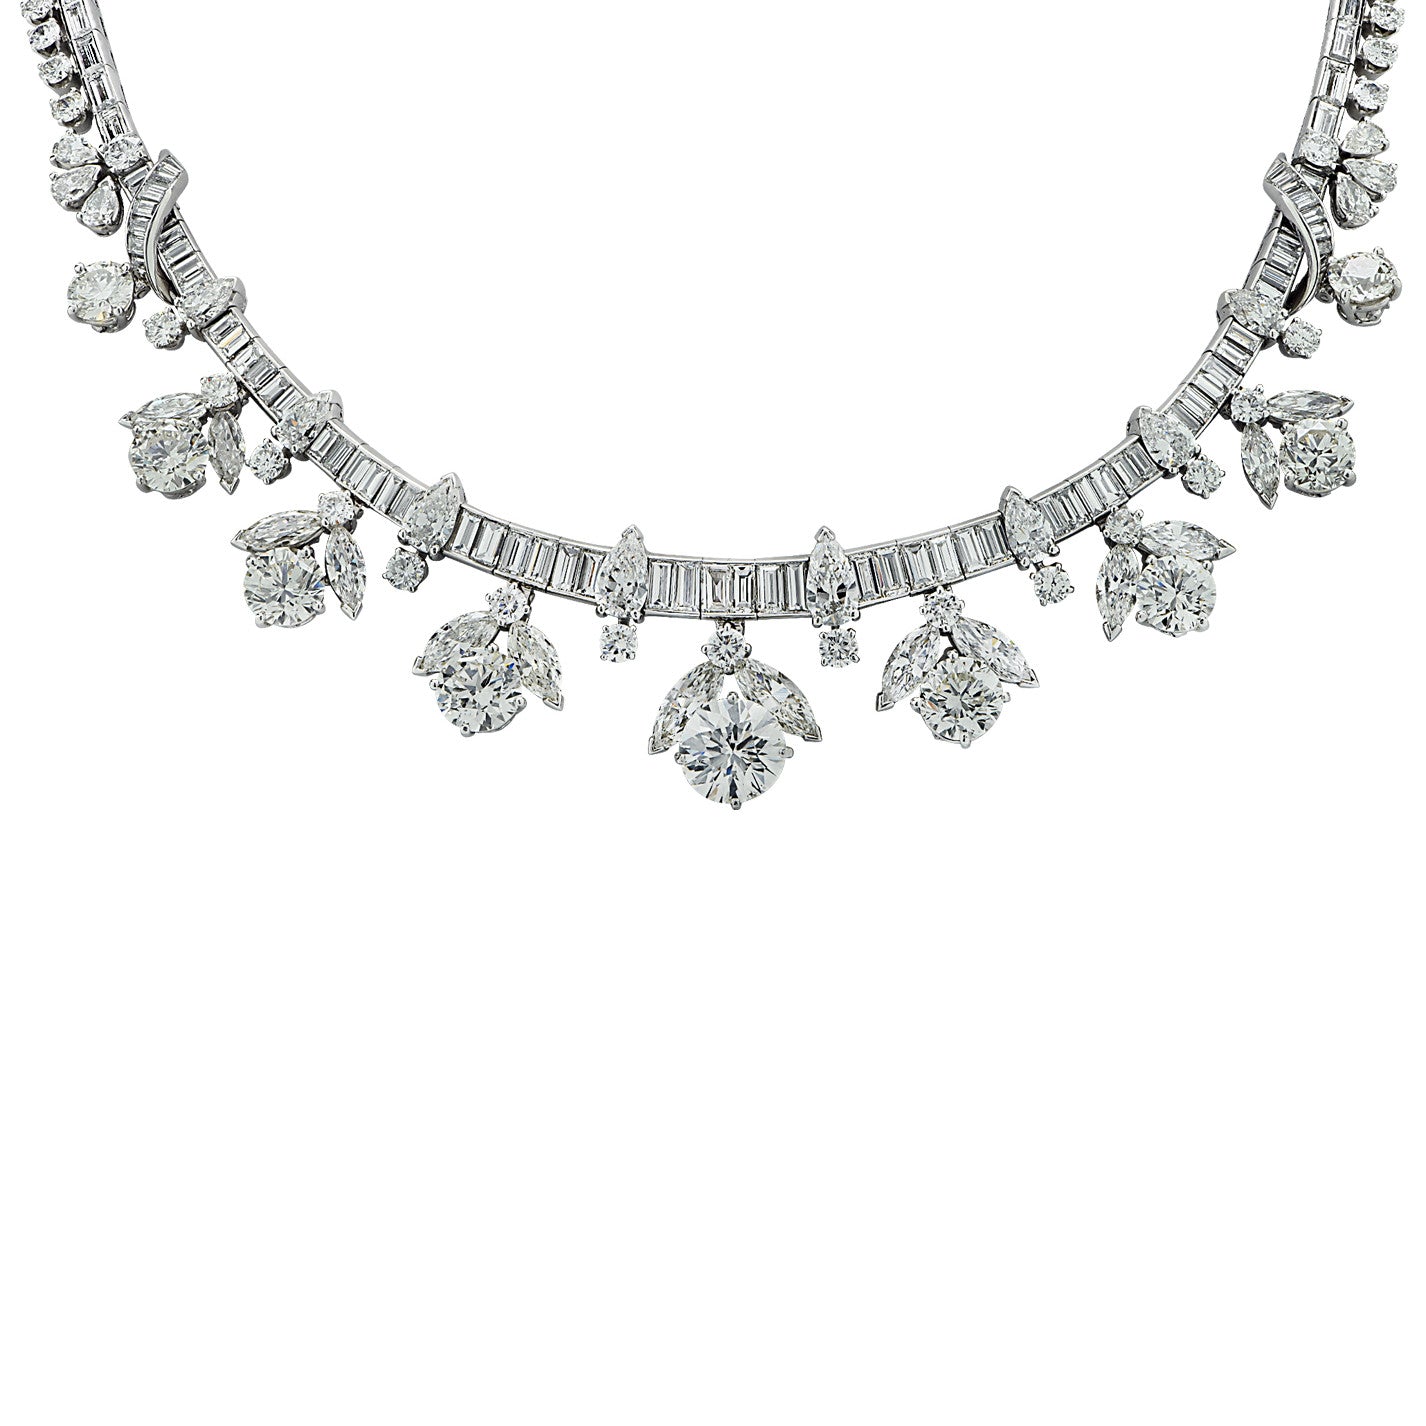 1960s Platinum Diamond Cluster Necklace close-up details